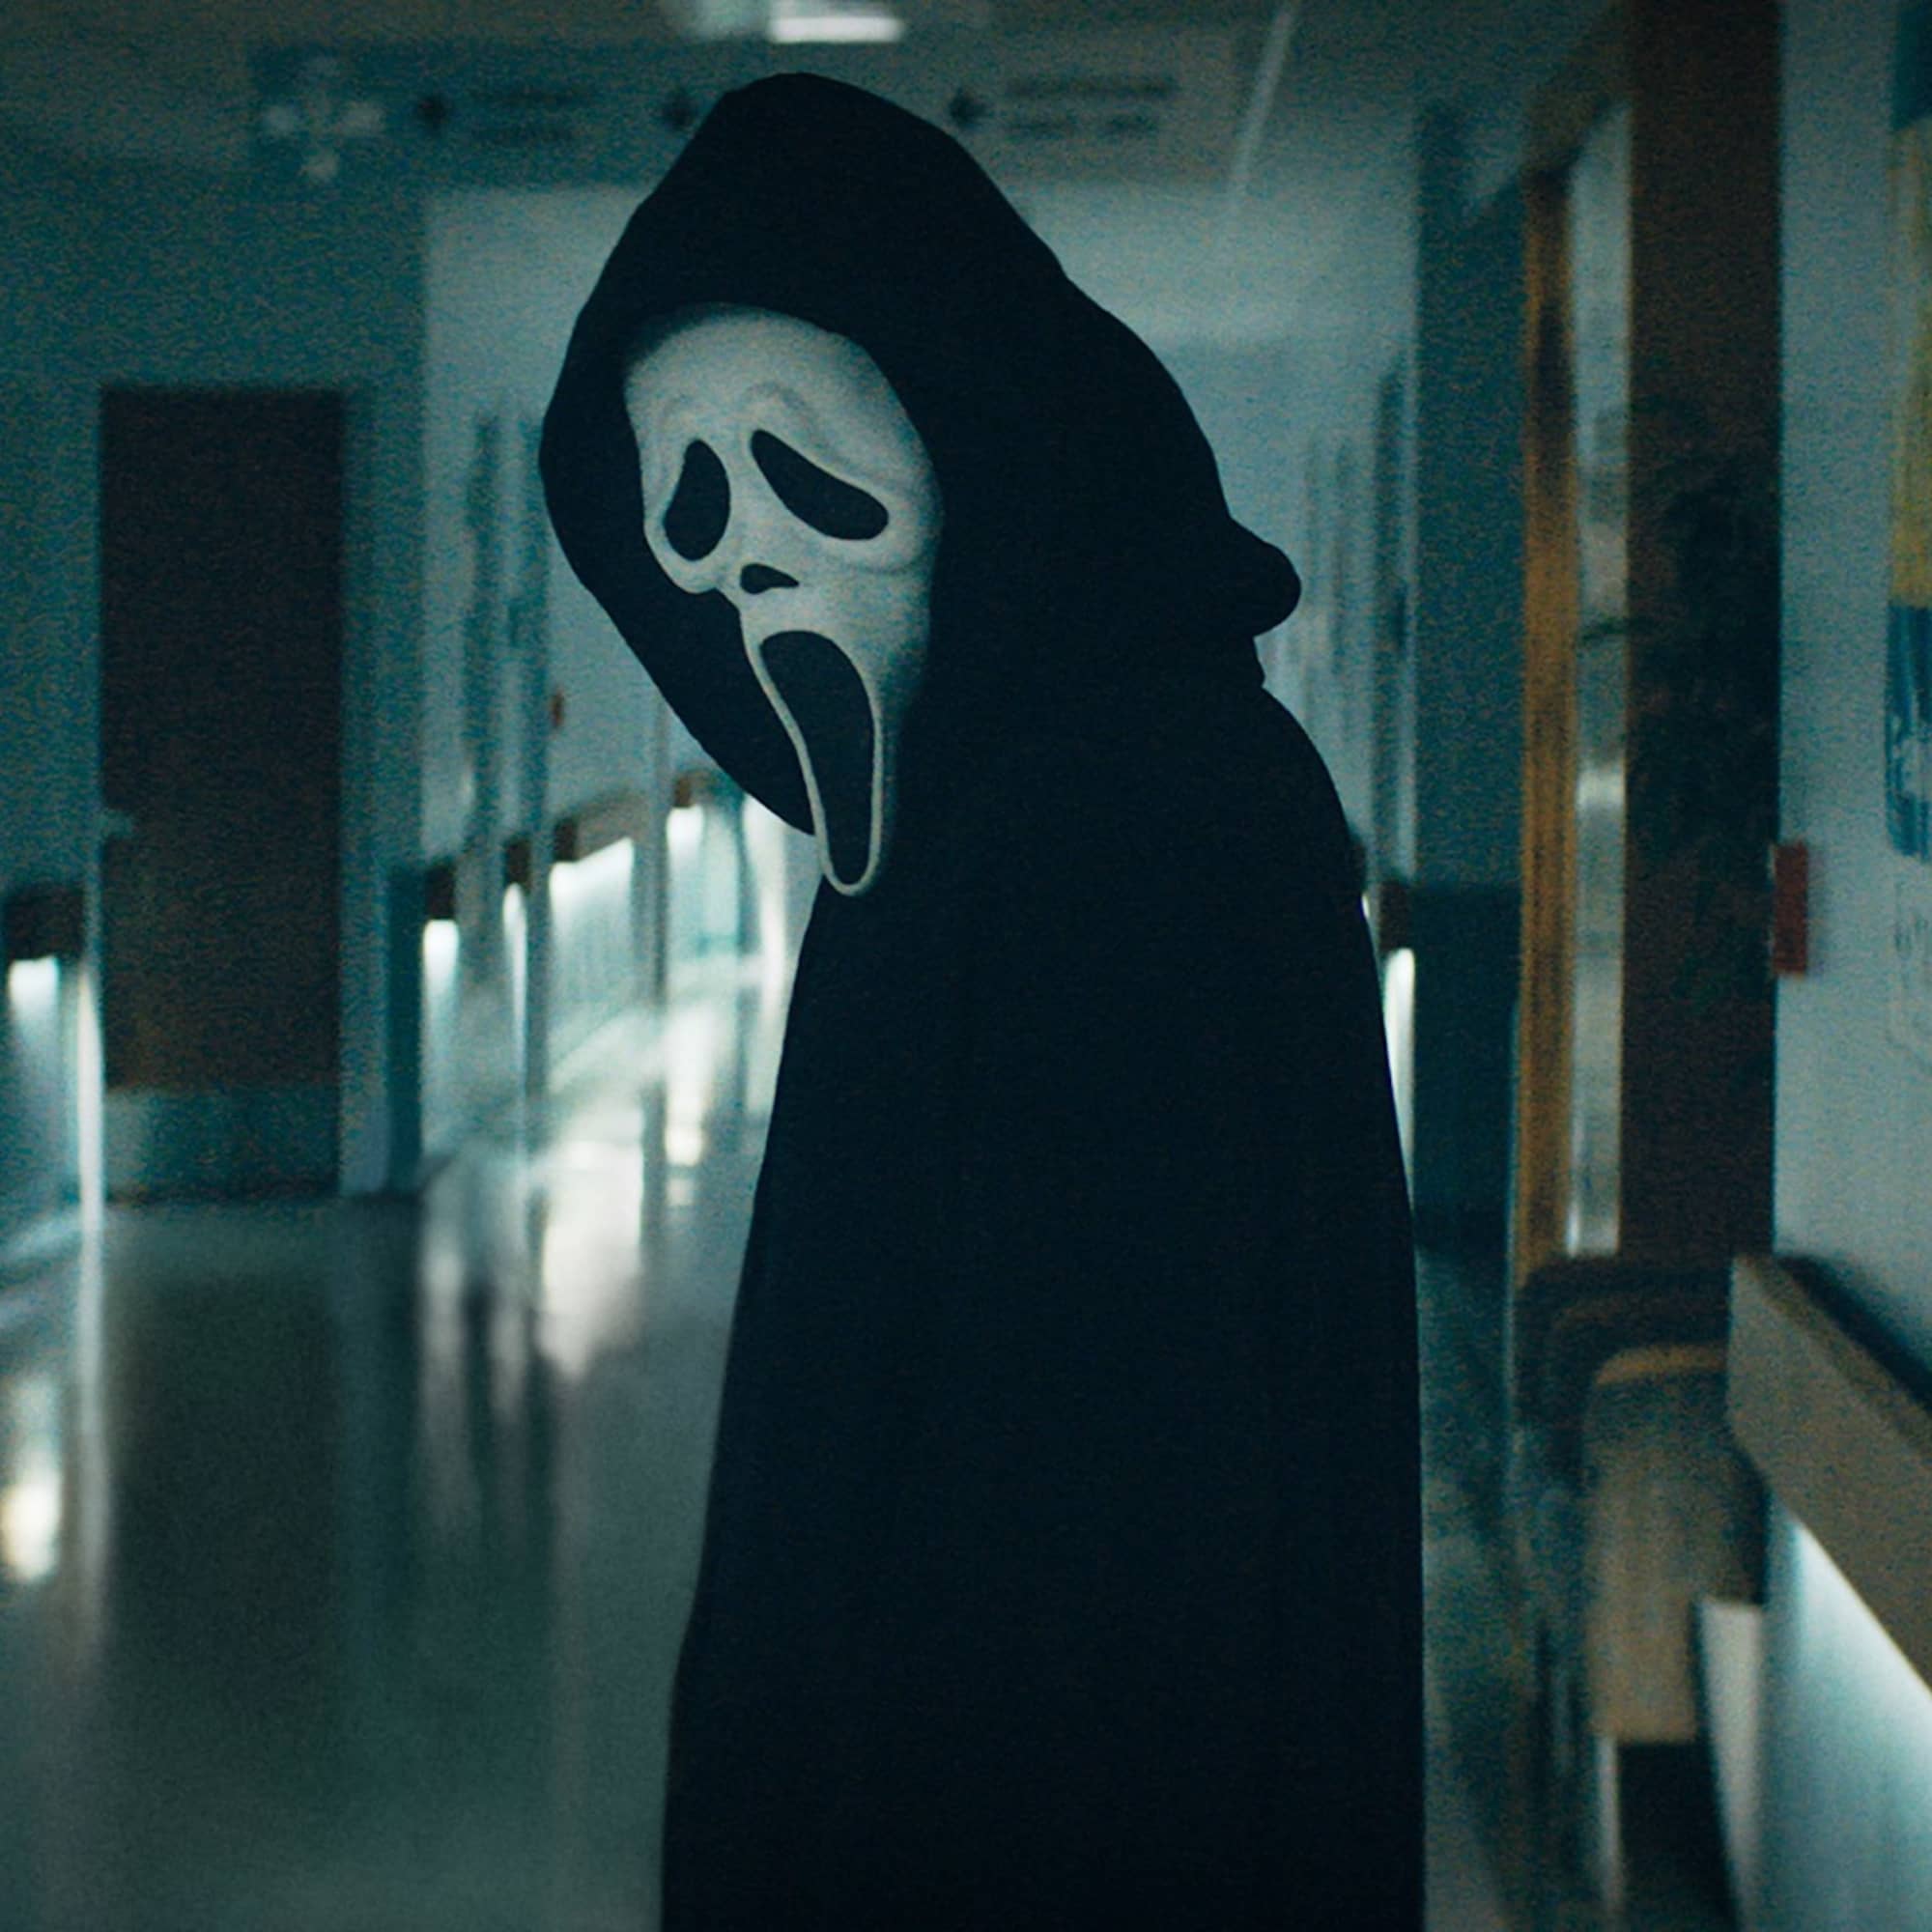 Hayden Panettiere Joins Cast of Scream 6 - Gameranx